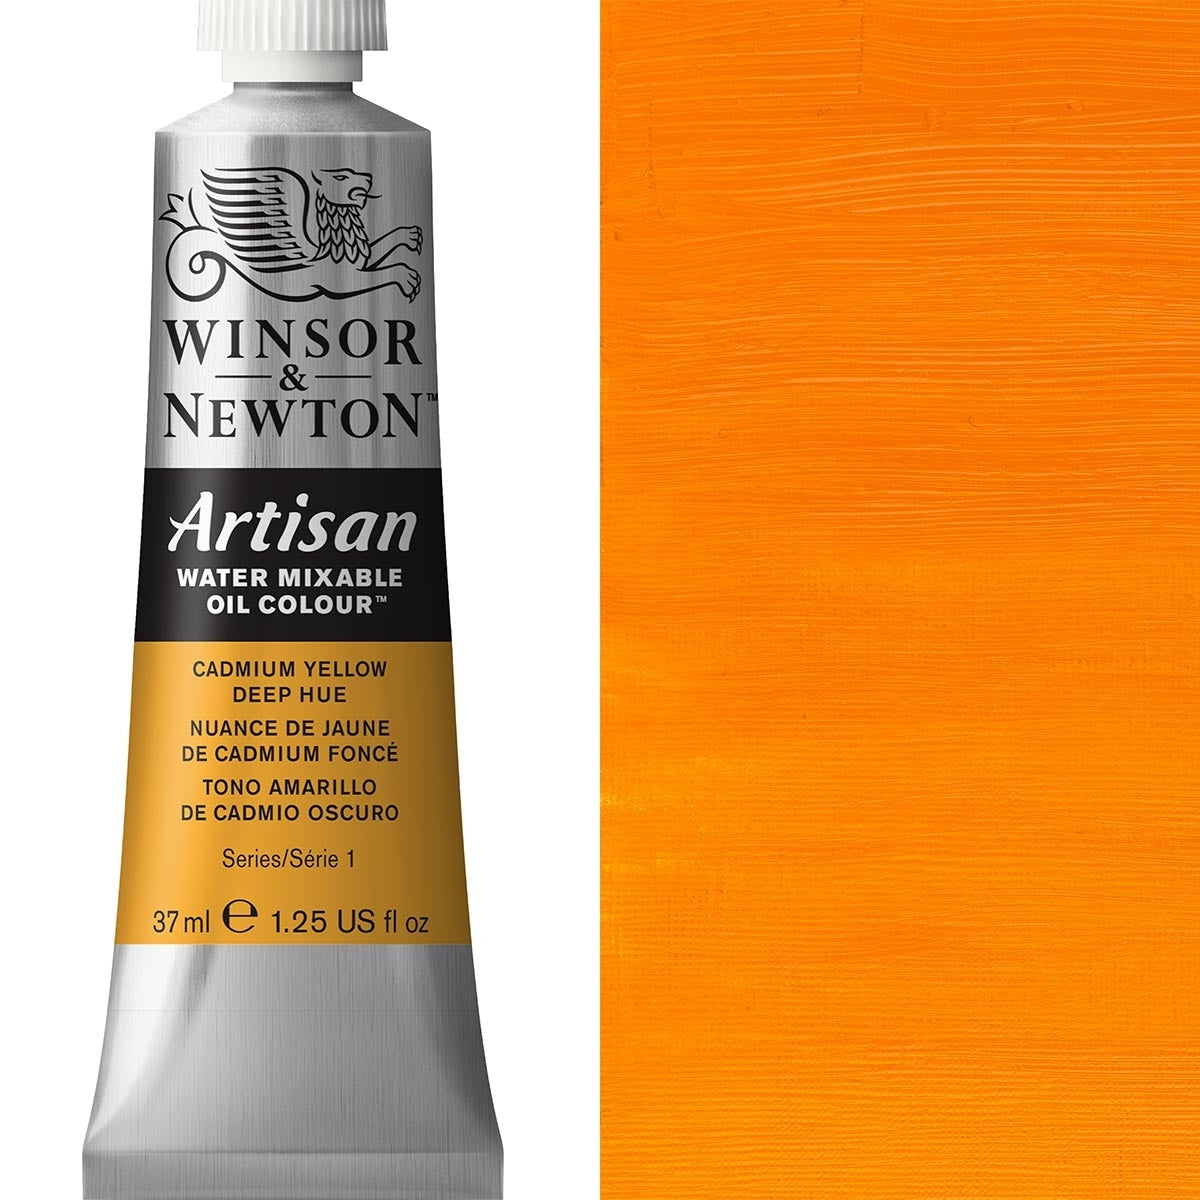 Winsor e Newton - Watermixable di colore olio artigianale - 37 ml - Deep giallo cadmio